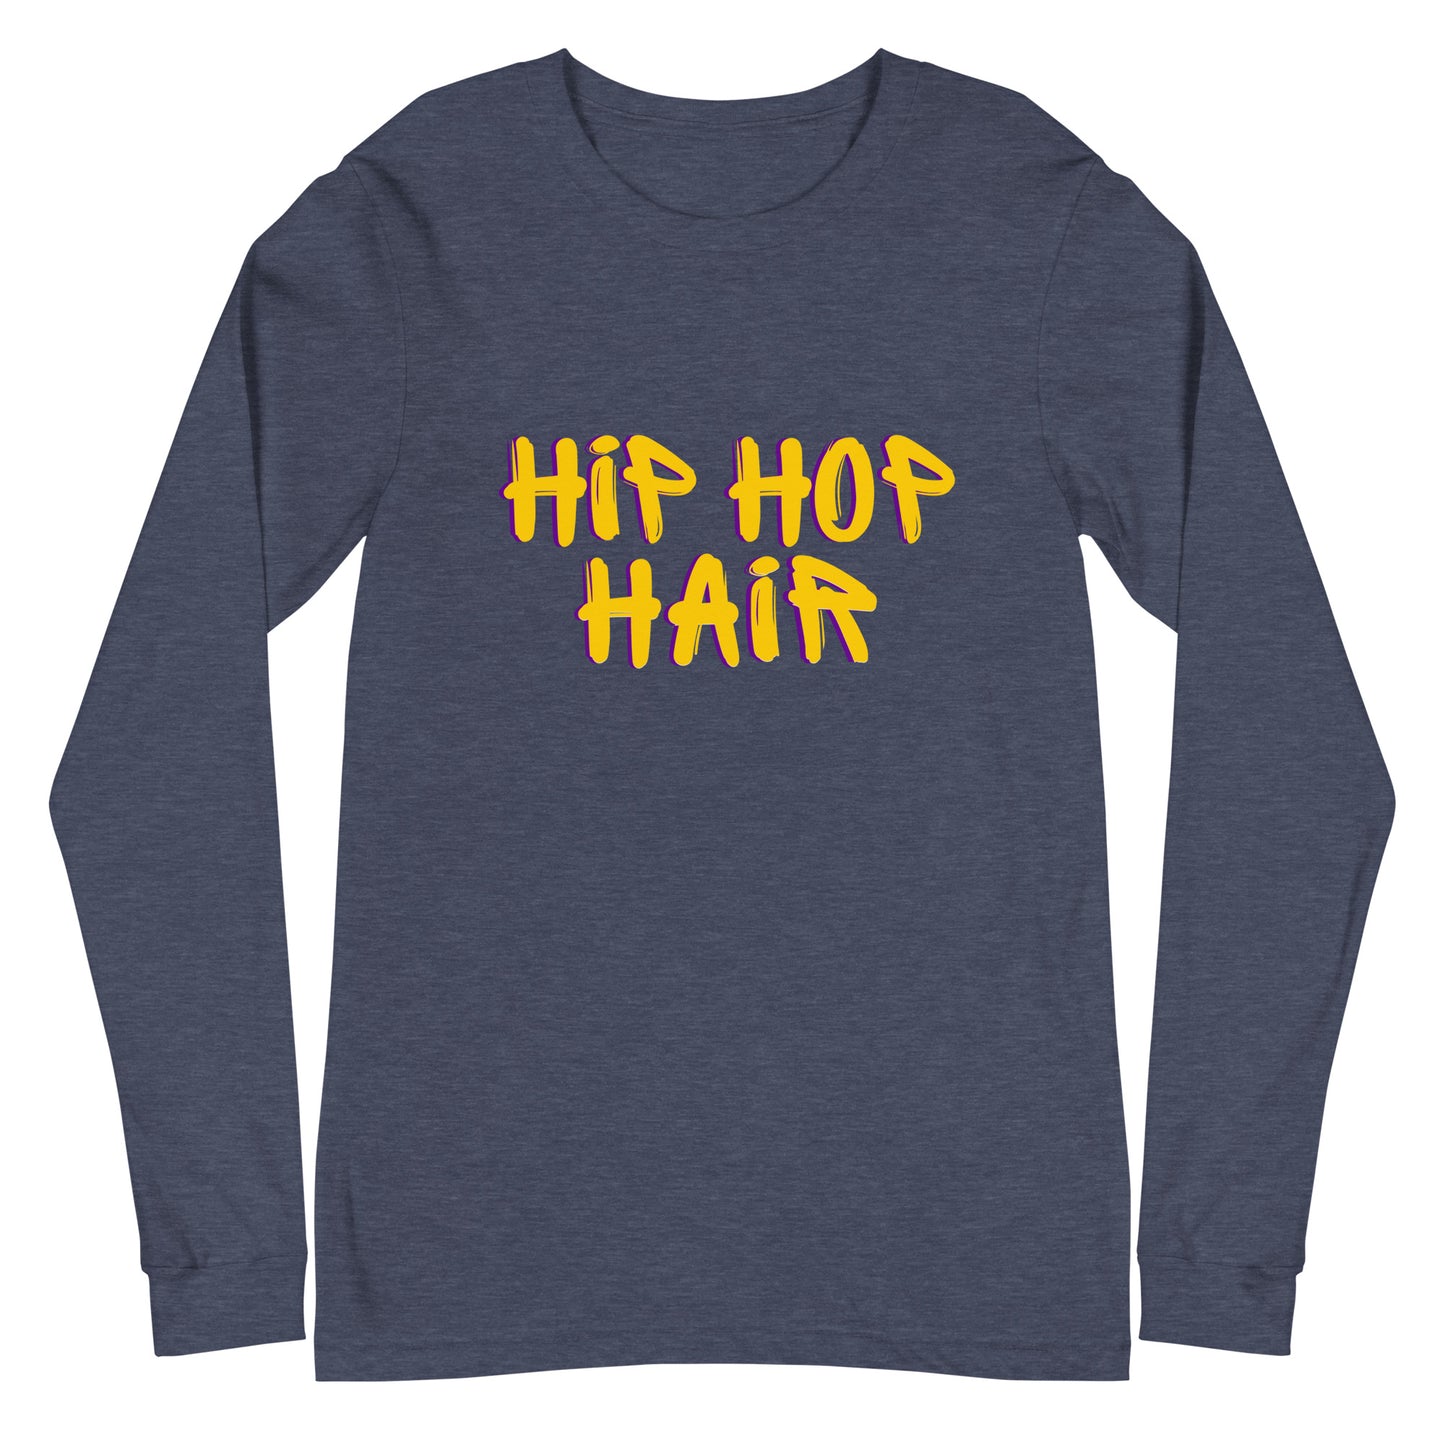 Hip Hop Hair Women's and Teen's Long Sleeve Tee